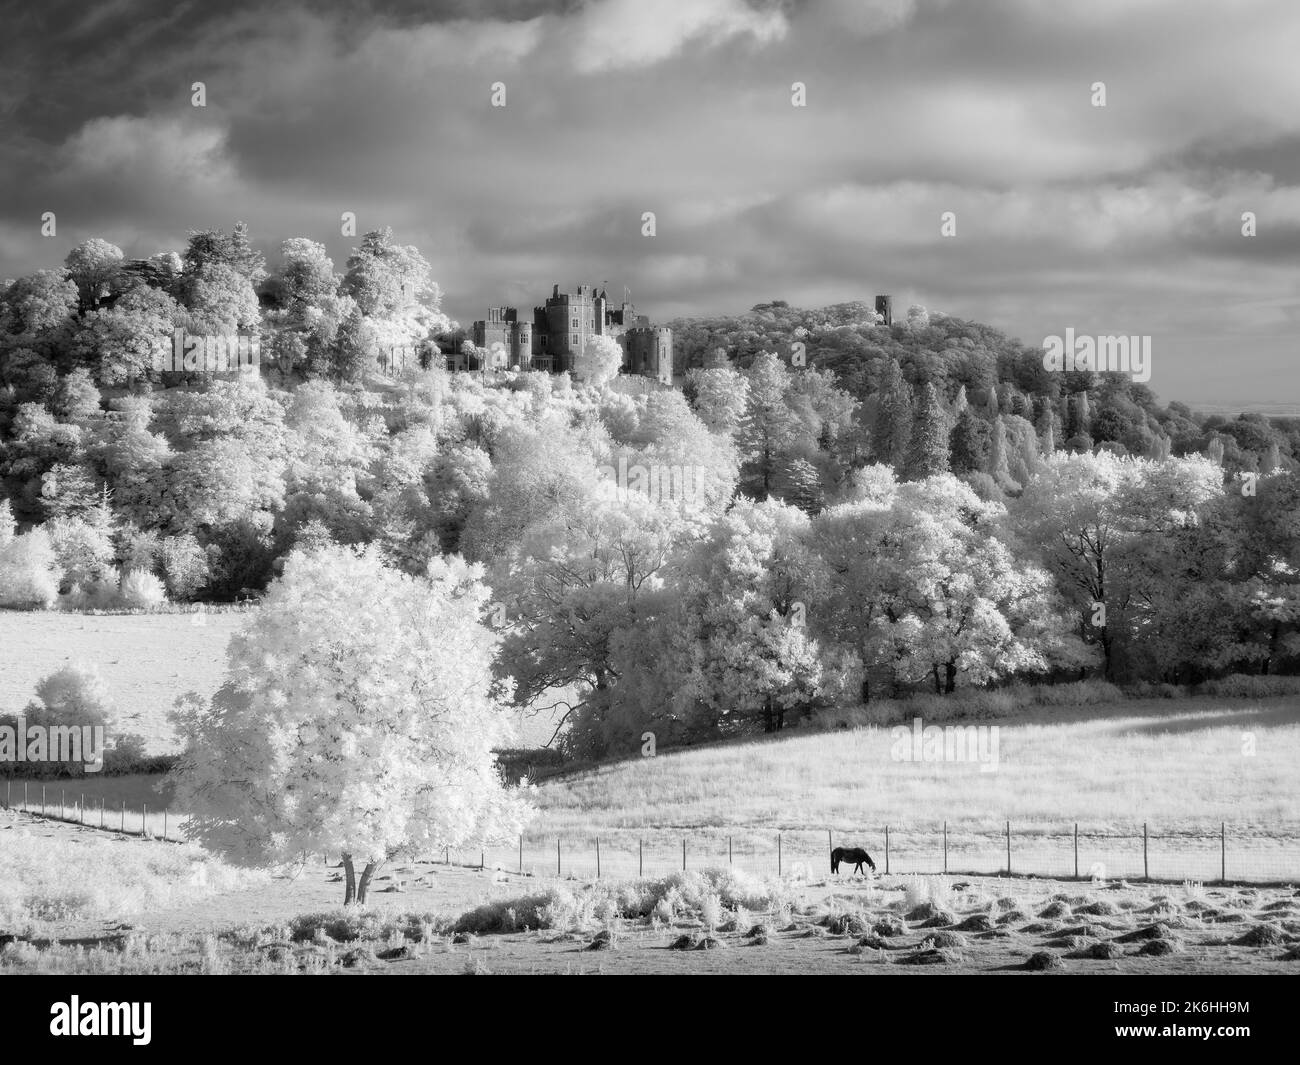 Immagine a infrarossi in bianco e nero del Castello di Dunster e della Torre di Conygar ai margini del Parco Nazionale di Exmoor, Somerset, Inghilterra. Foto Stock